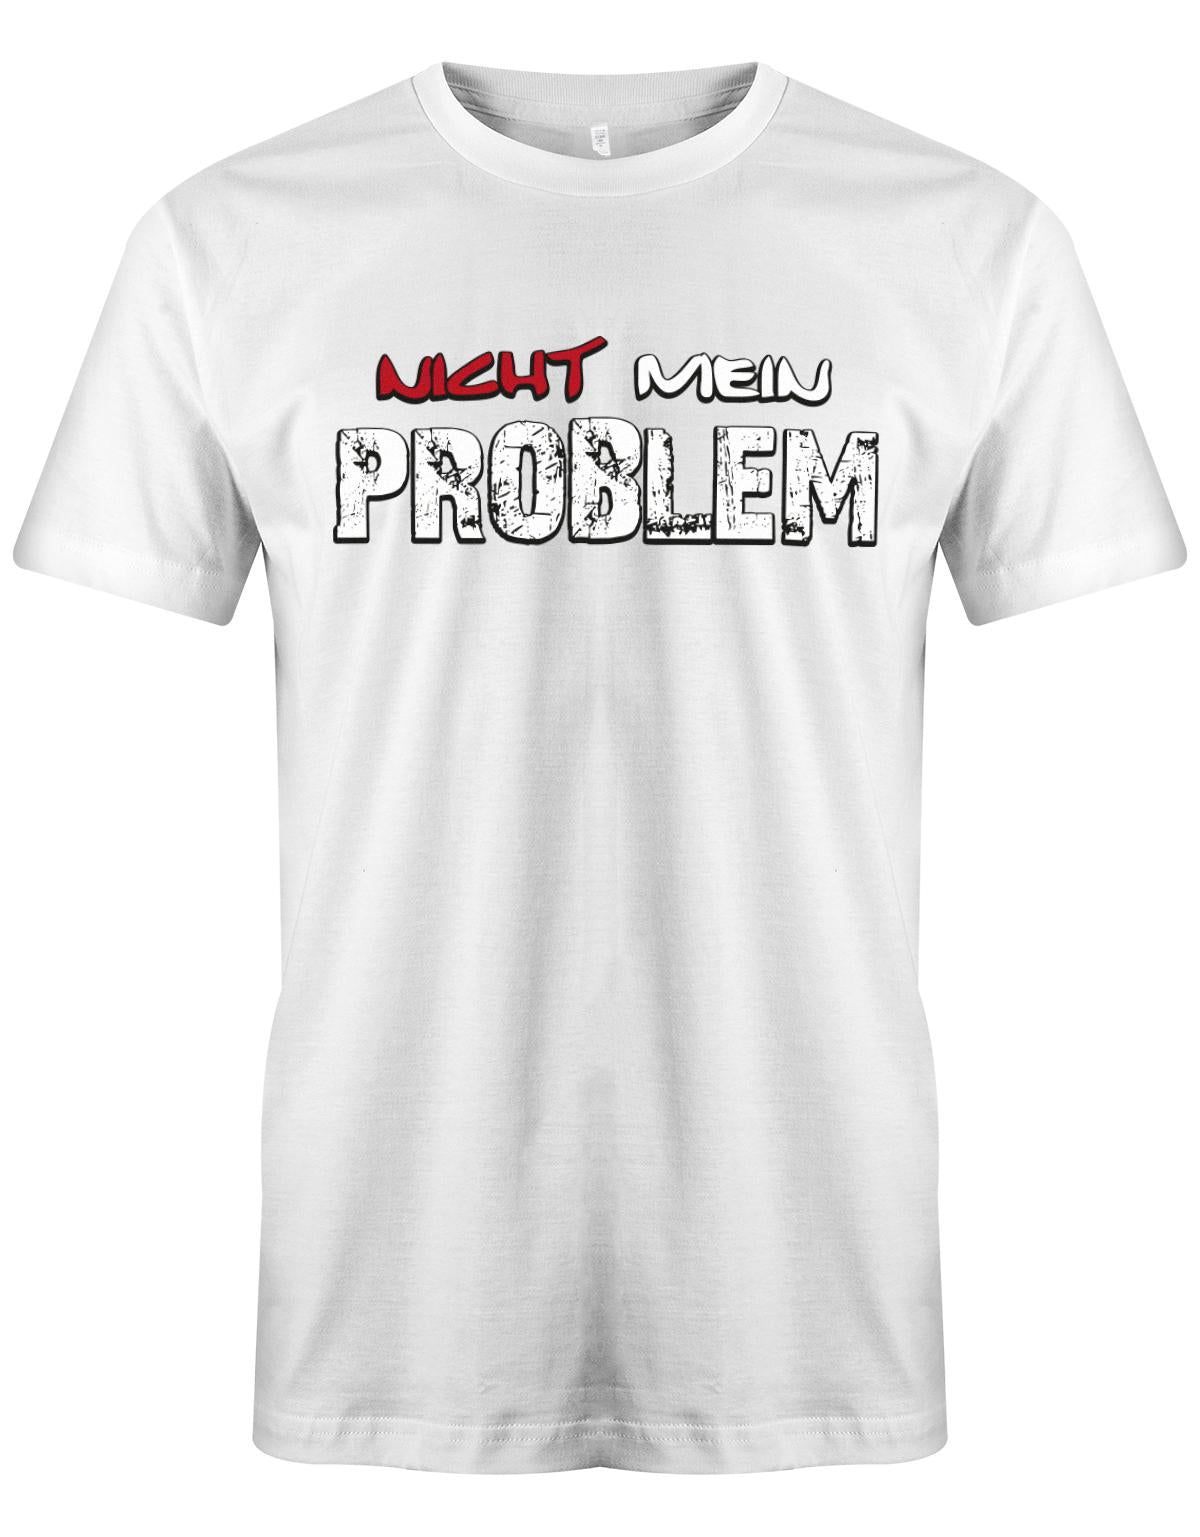 Lustiges Sprüche Shirt - Nicht mein Problem Weiss